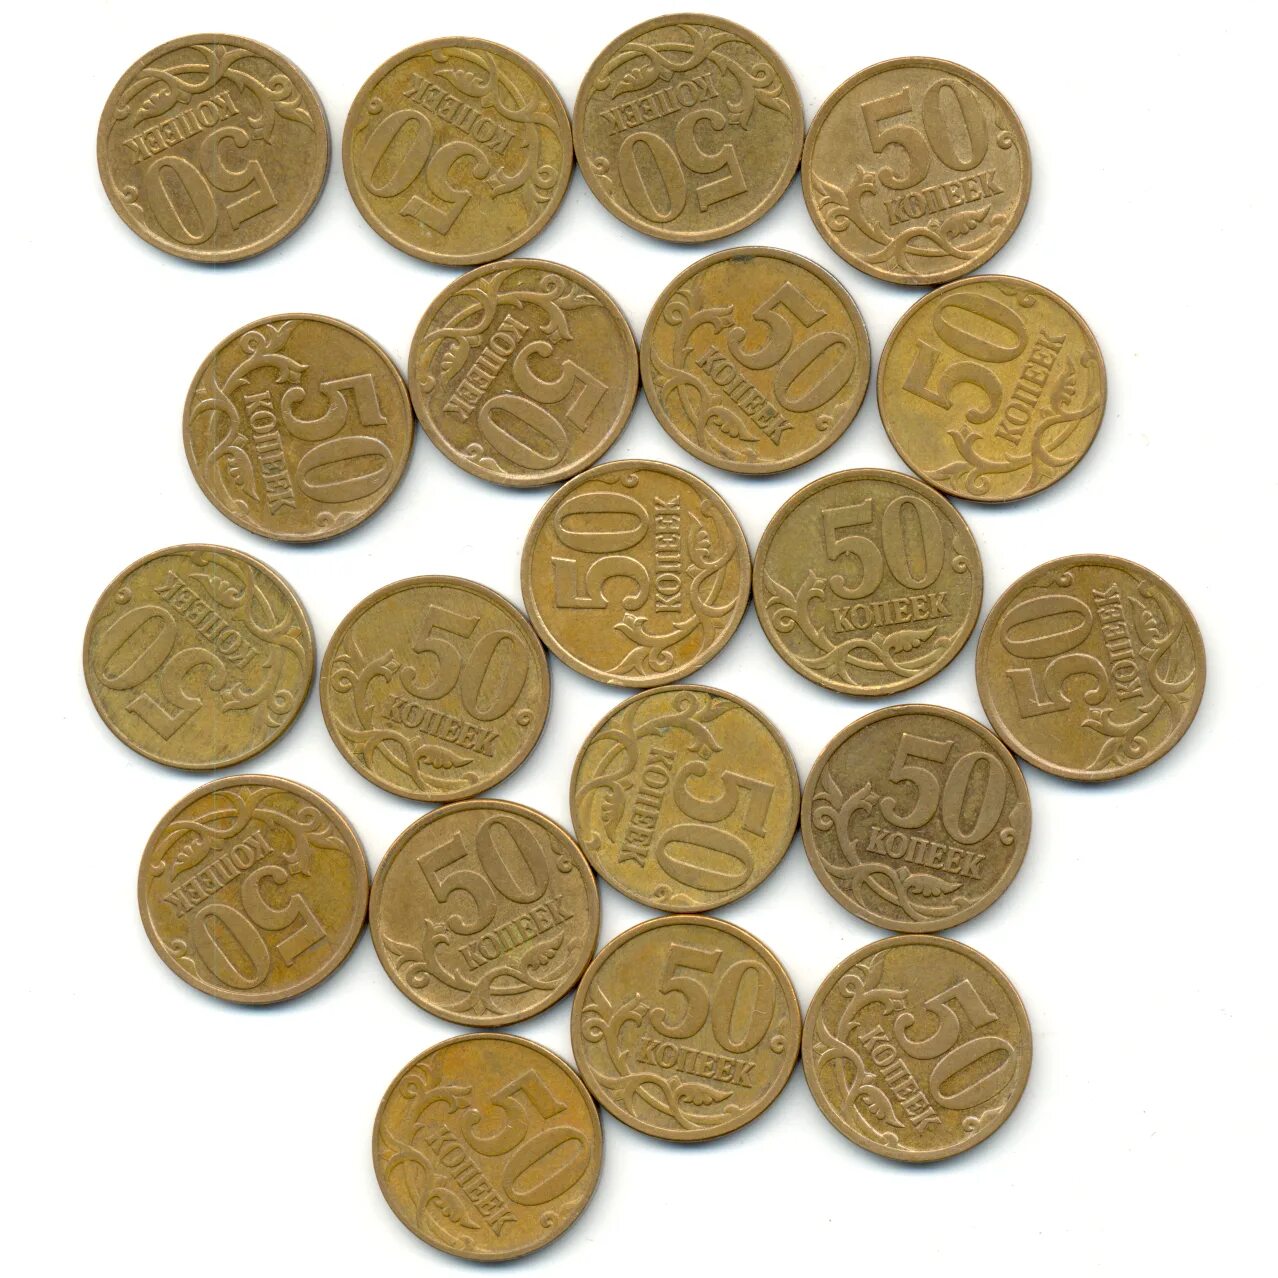 50 Копеек 2017. Кант широкий в монете 50 копеек. Что можно много много много копеек купить.